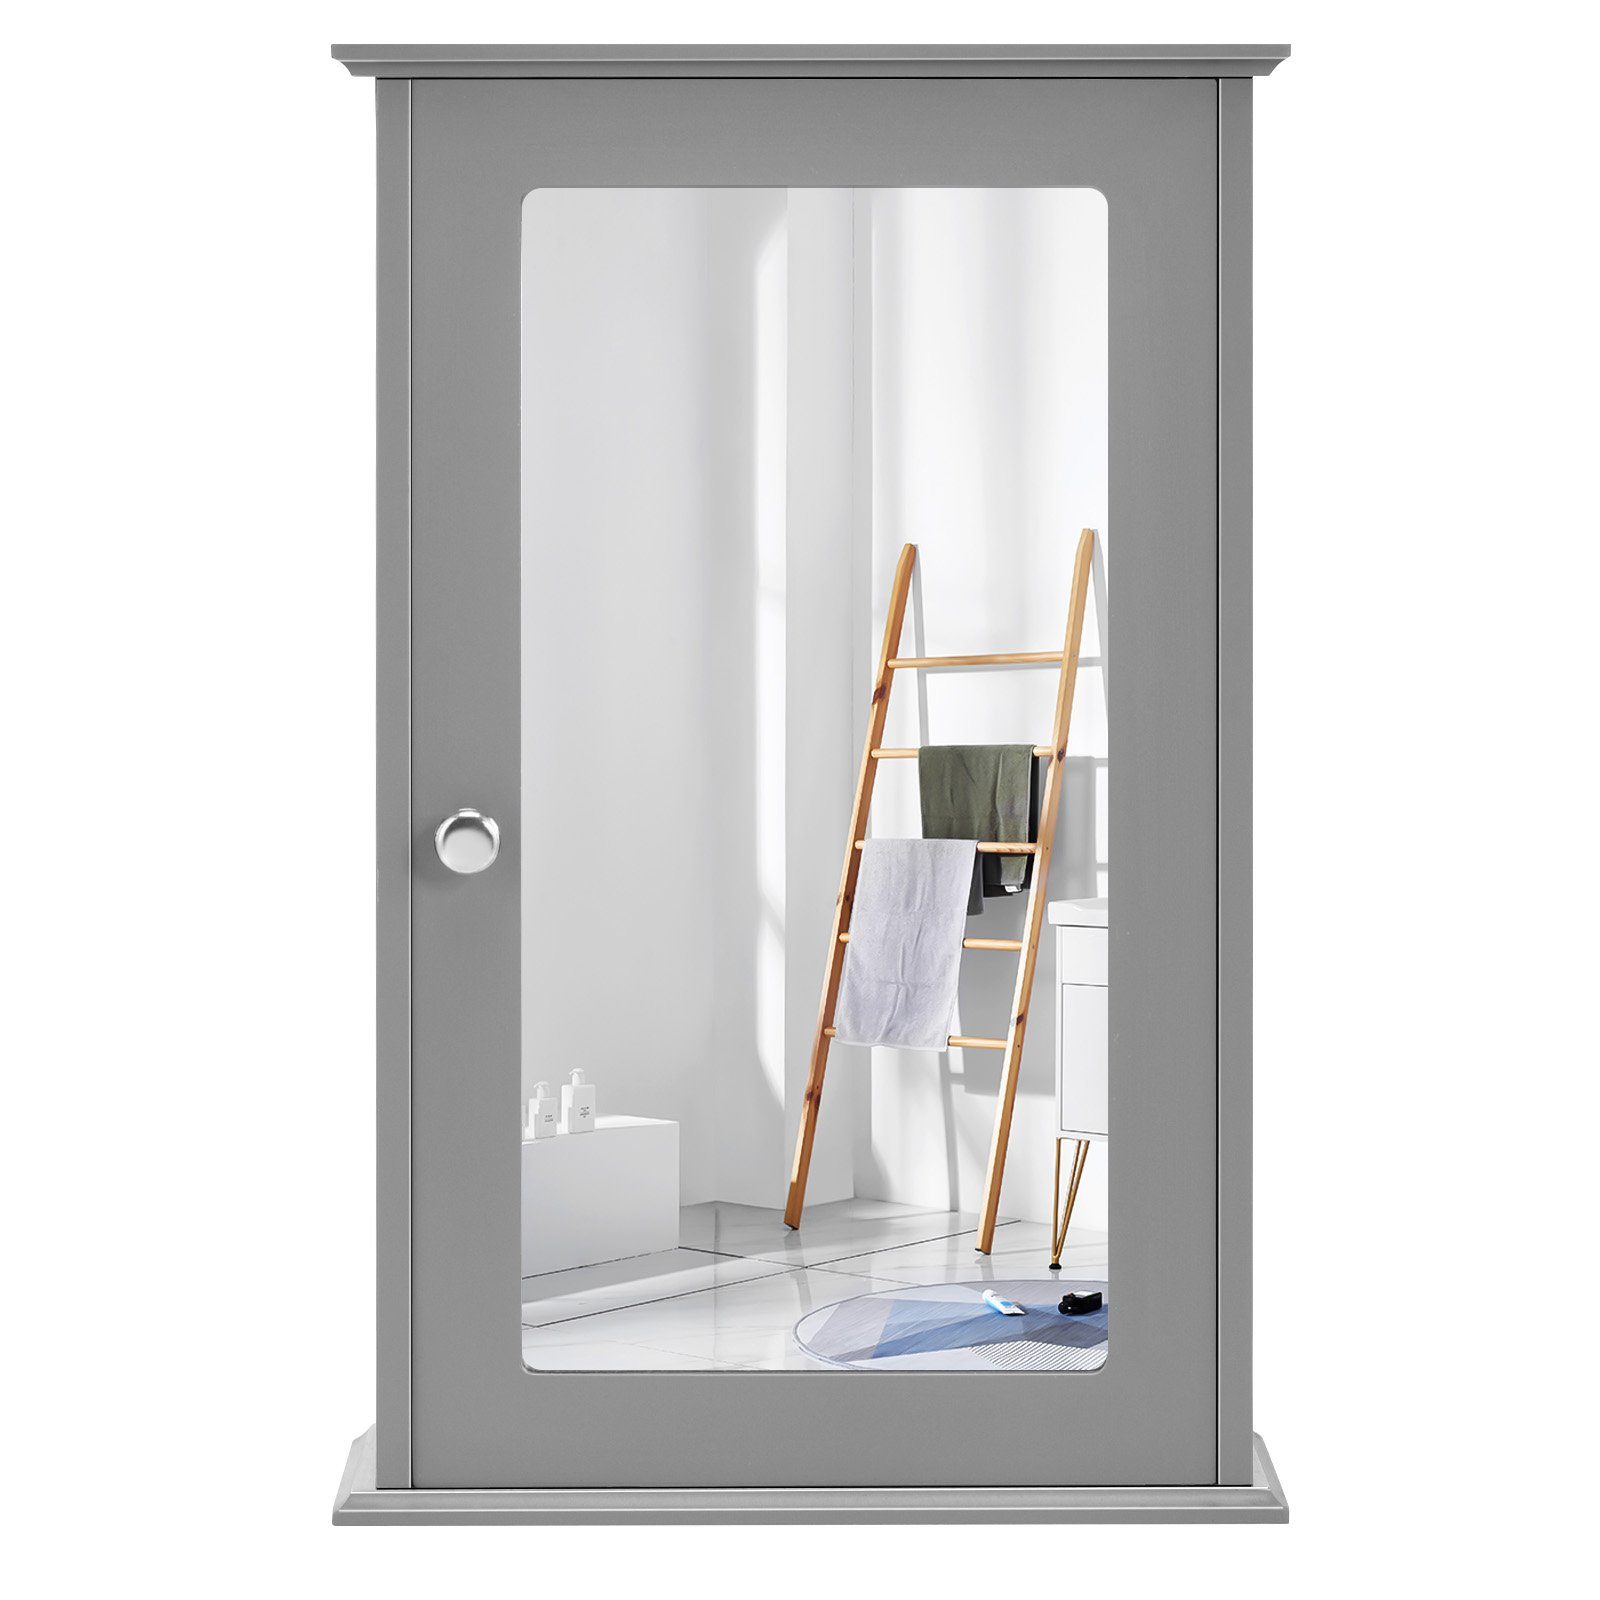 Ablage, mit Holz, grau & 34x15x53cm, COSTWAY Tür Bad, Spiegelschrank